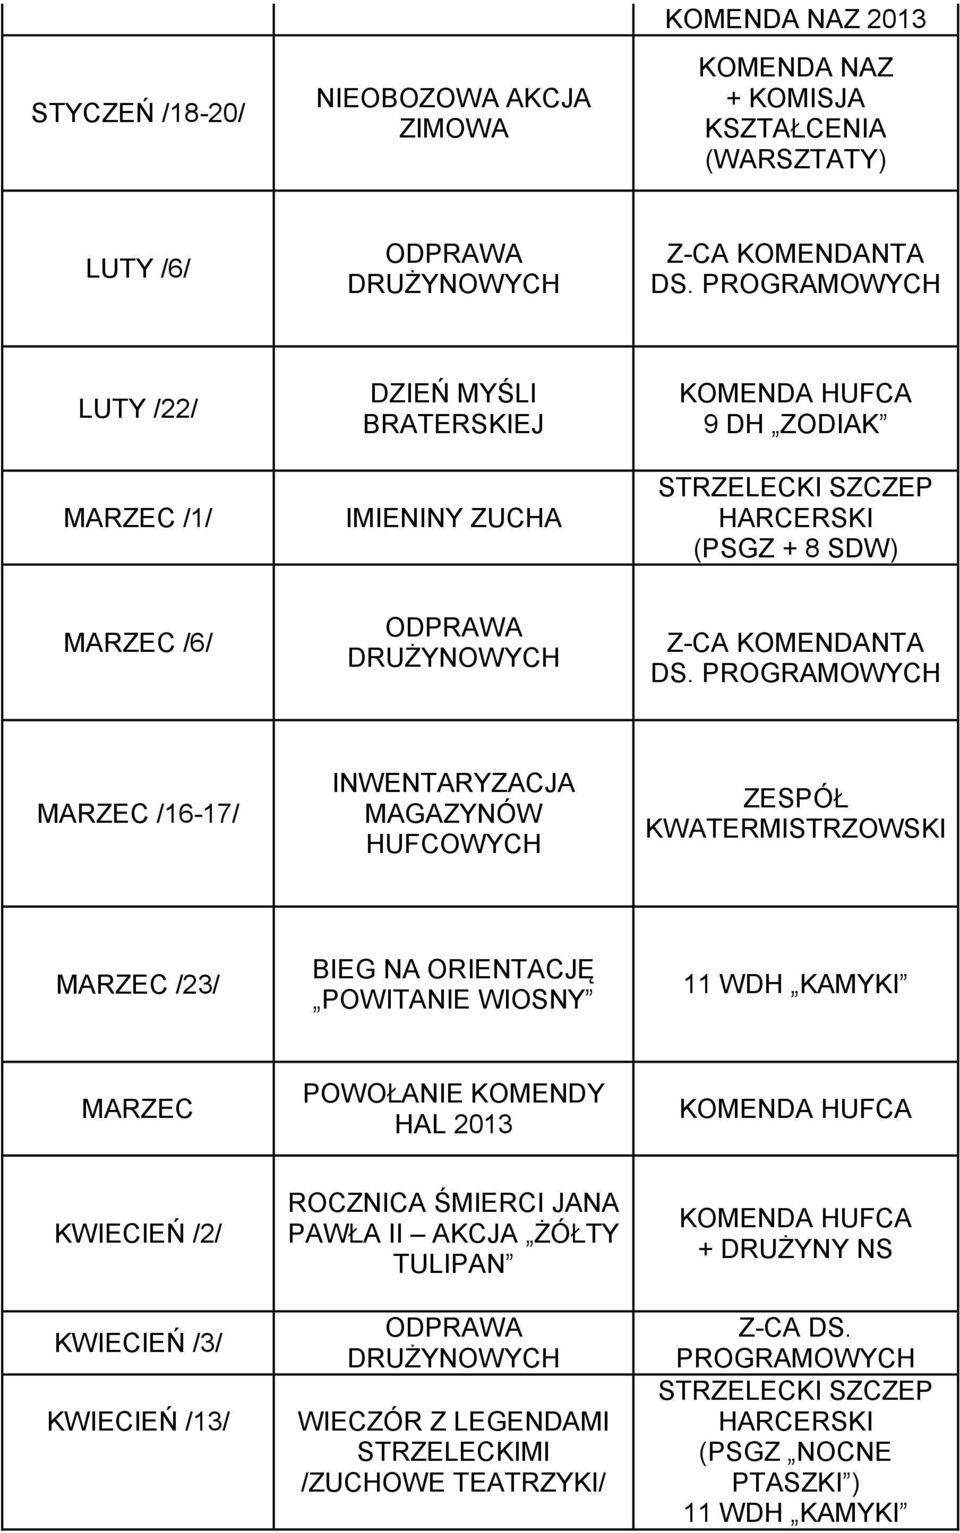 ORIENTACJĘ POWITANIE WIOSNY 11 WDH KAMYKI MARZEC POWOŁANIE KOMENDY HAL 2013 KWIECIEŃ /2/ KWIECIEŃ /3/ KWIECIEŃ /13/ ROCZNICA ŚMIERCI JANA